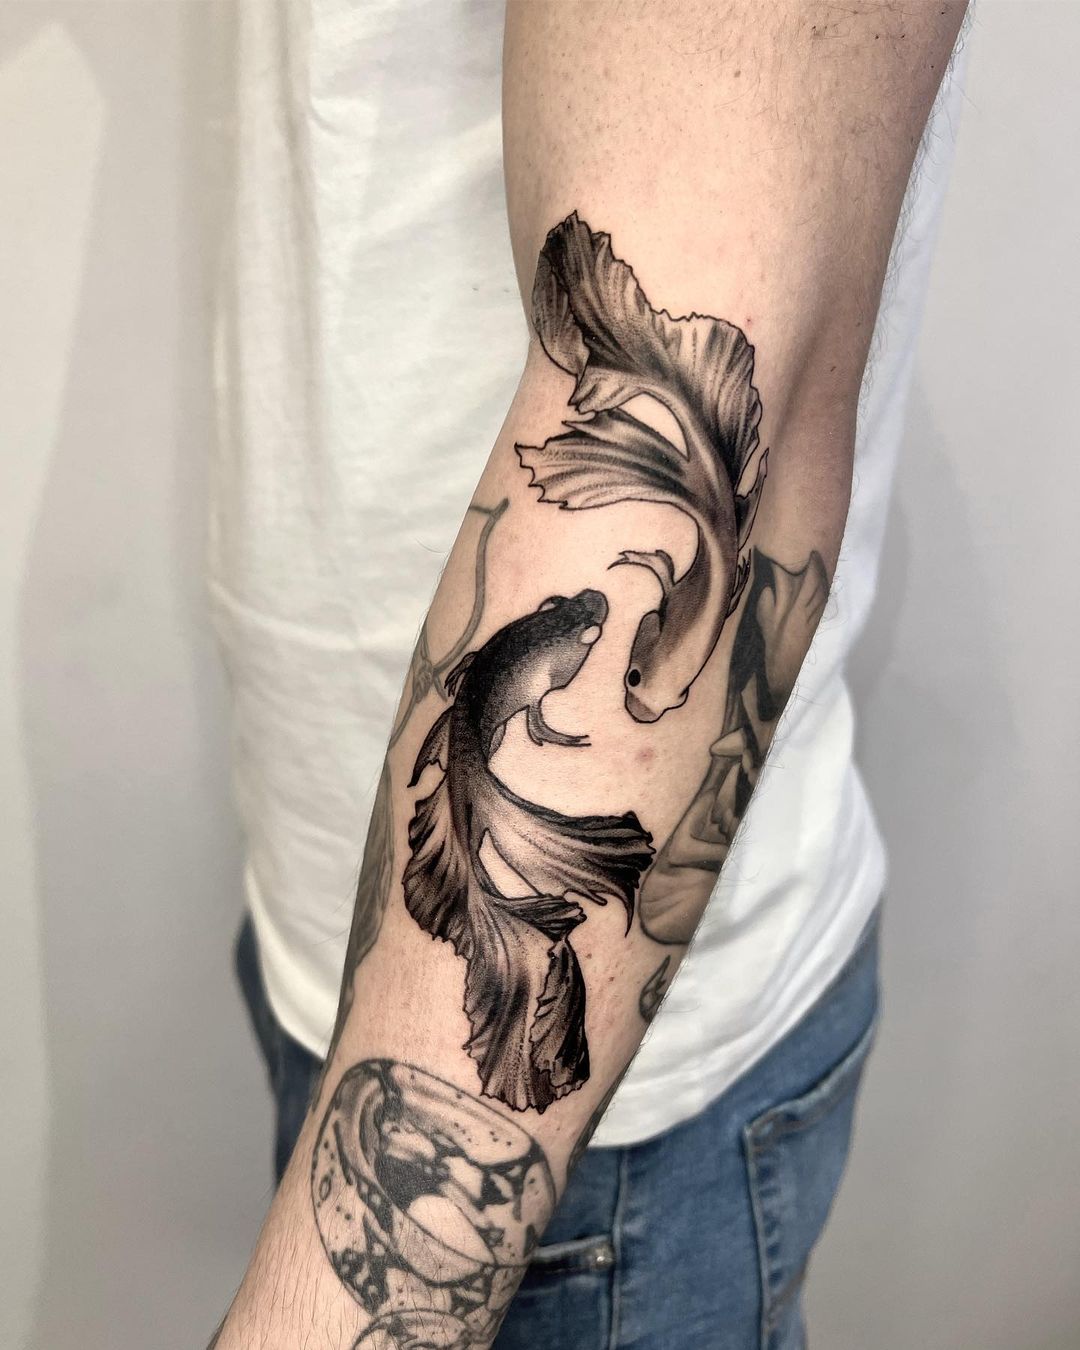 Realistic fish tattoo by miserflow.tattoo